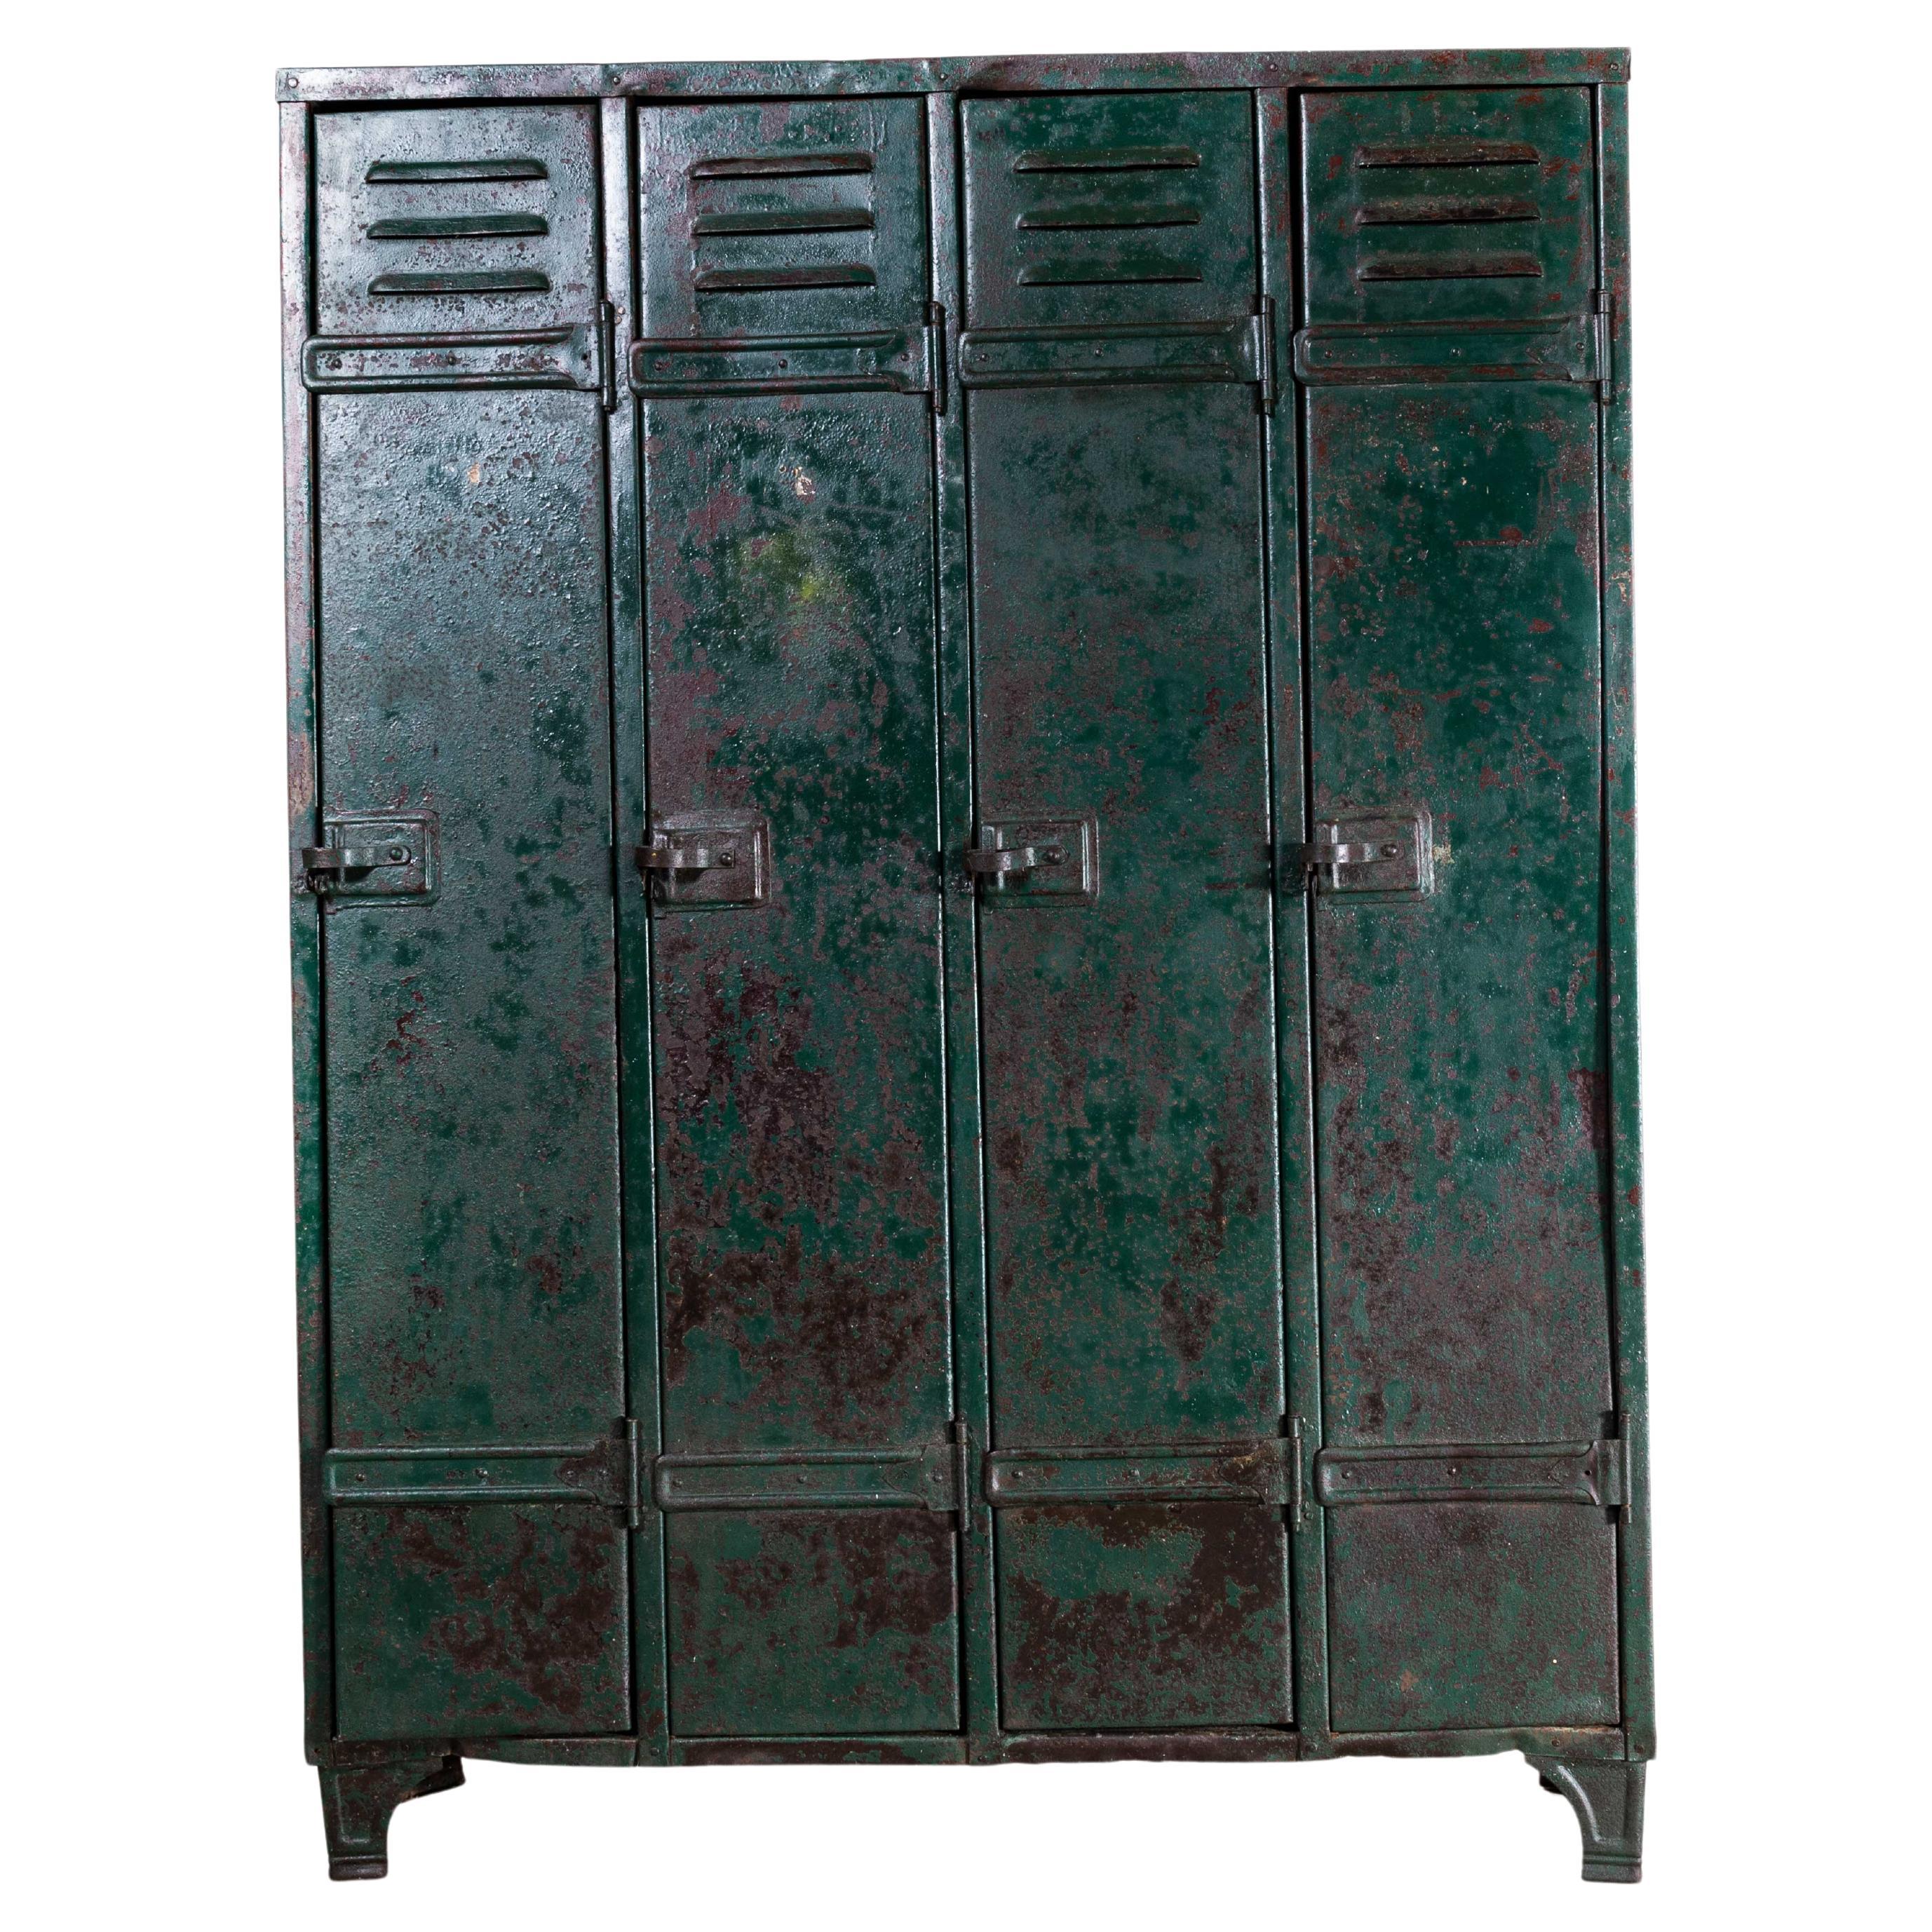 1940s Heavy Duty French Steel Industrial Locker, Four Door